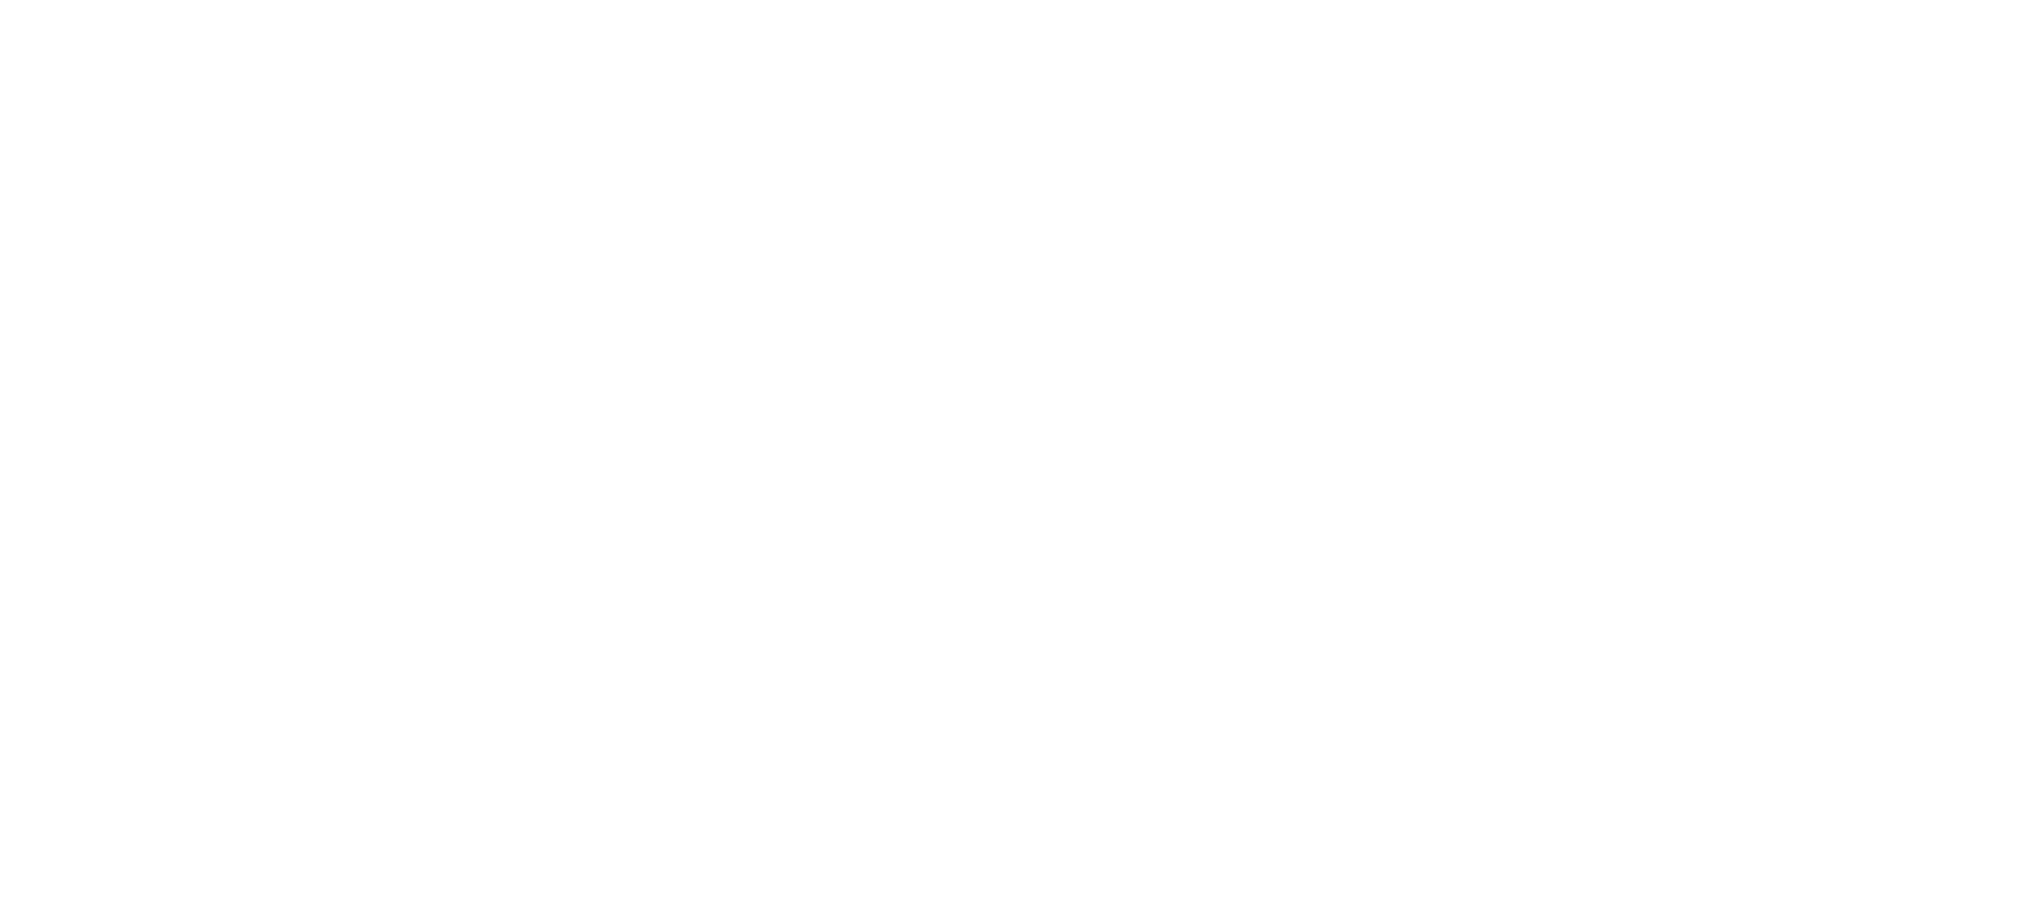 Mint Office Express